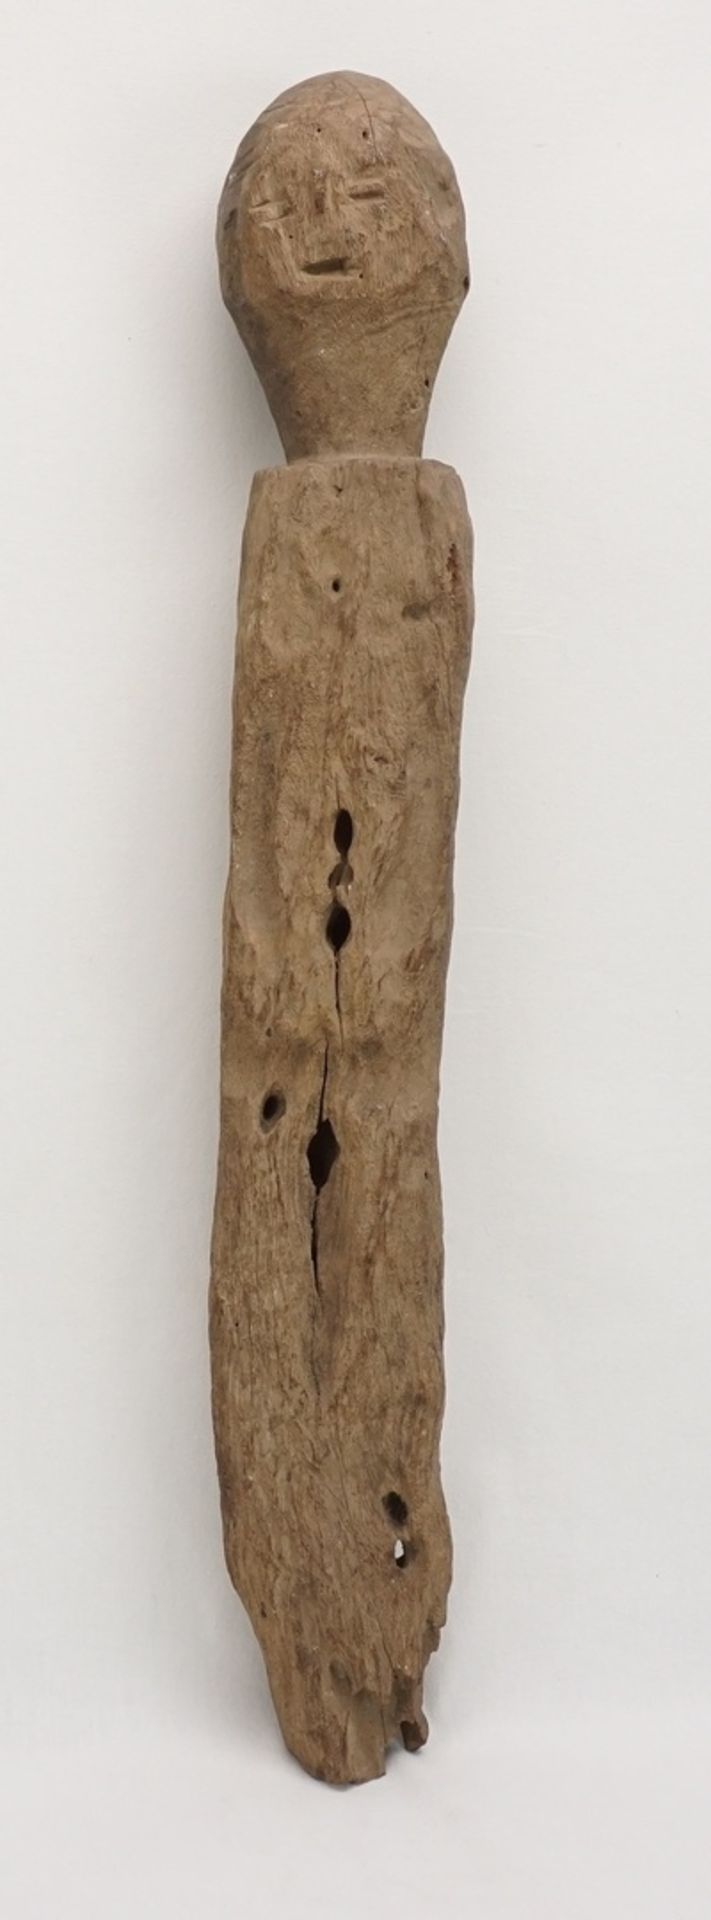 Bochio Pfostenfigur, Benin / Togo, 1. Hälfte 20. Jh.Hartholz, stark reduzierte Figur der Fon, aus